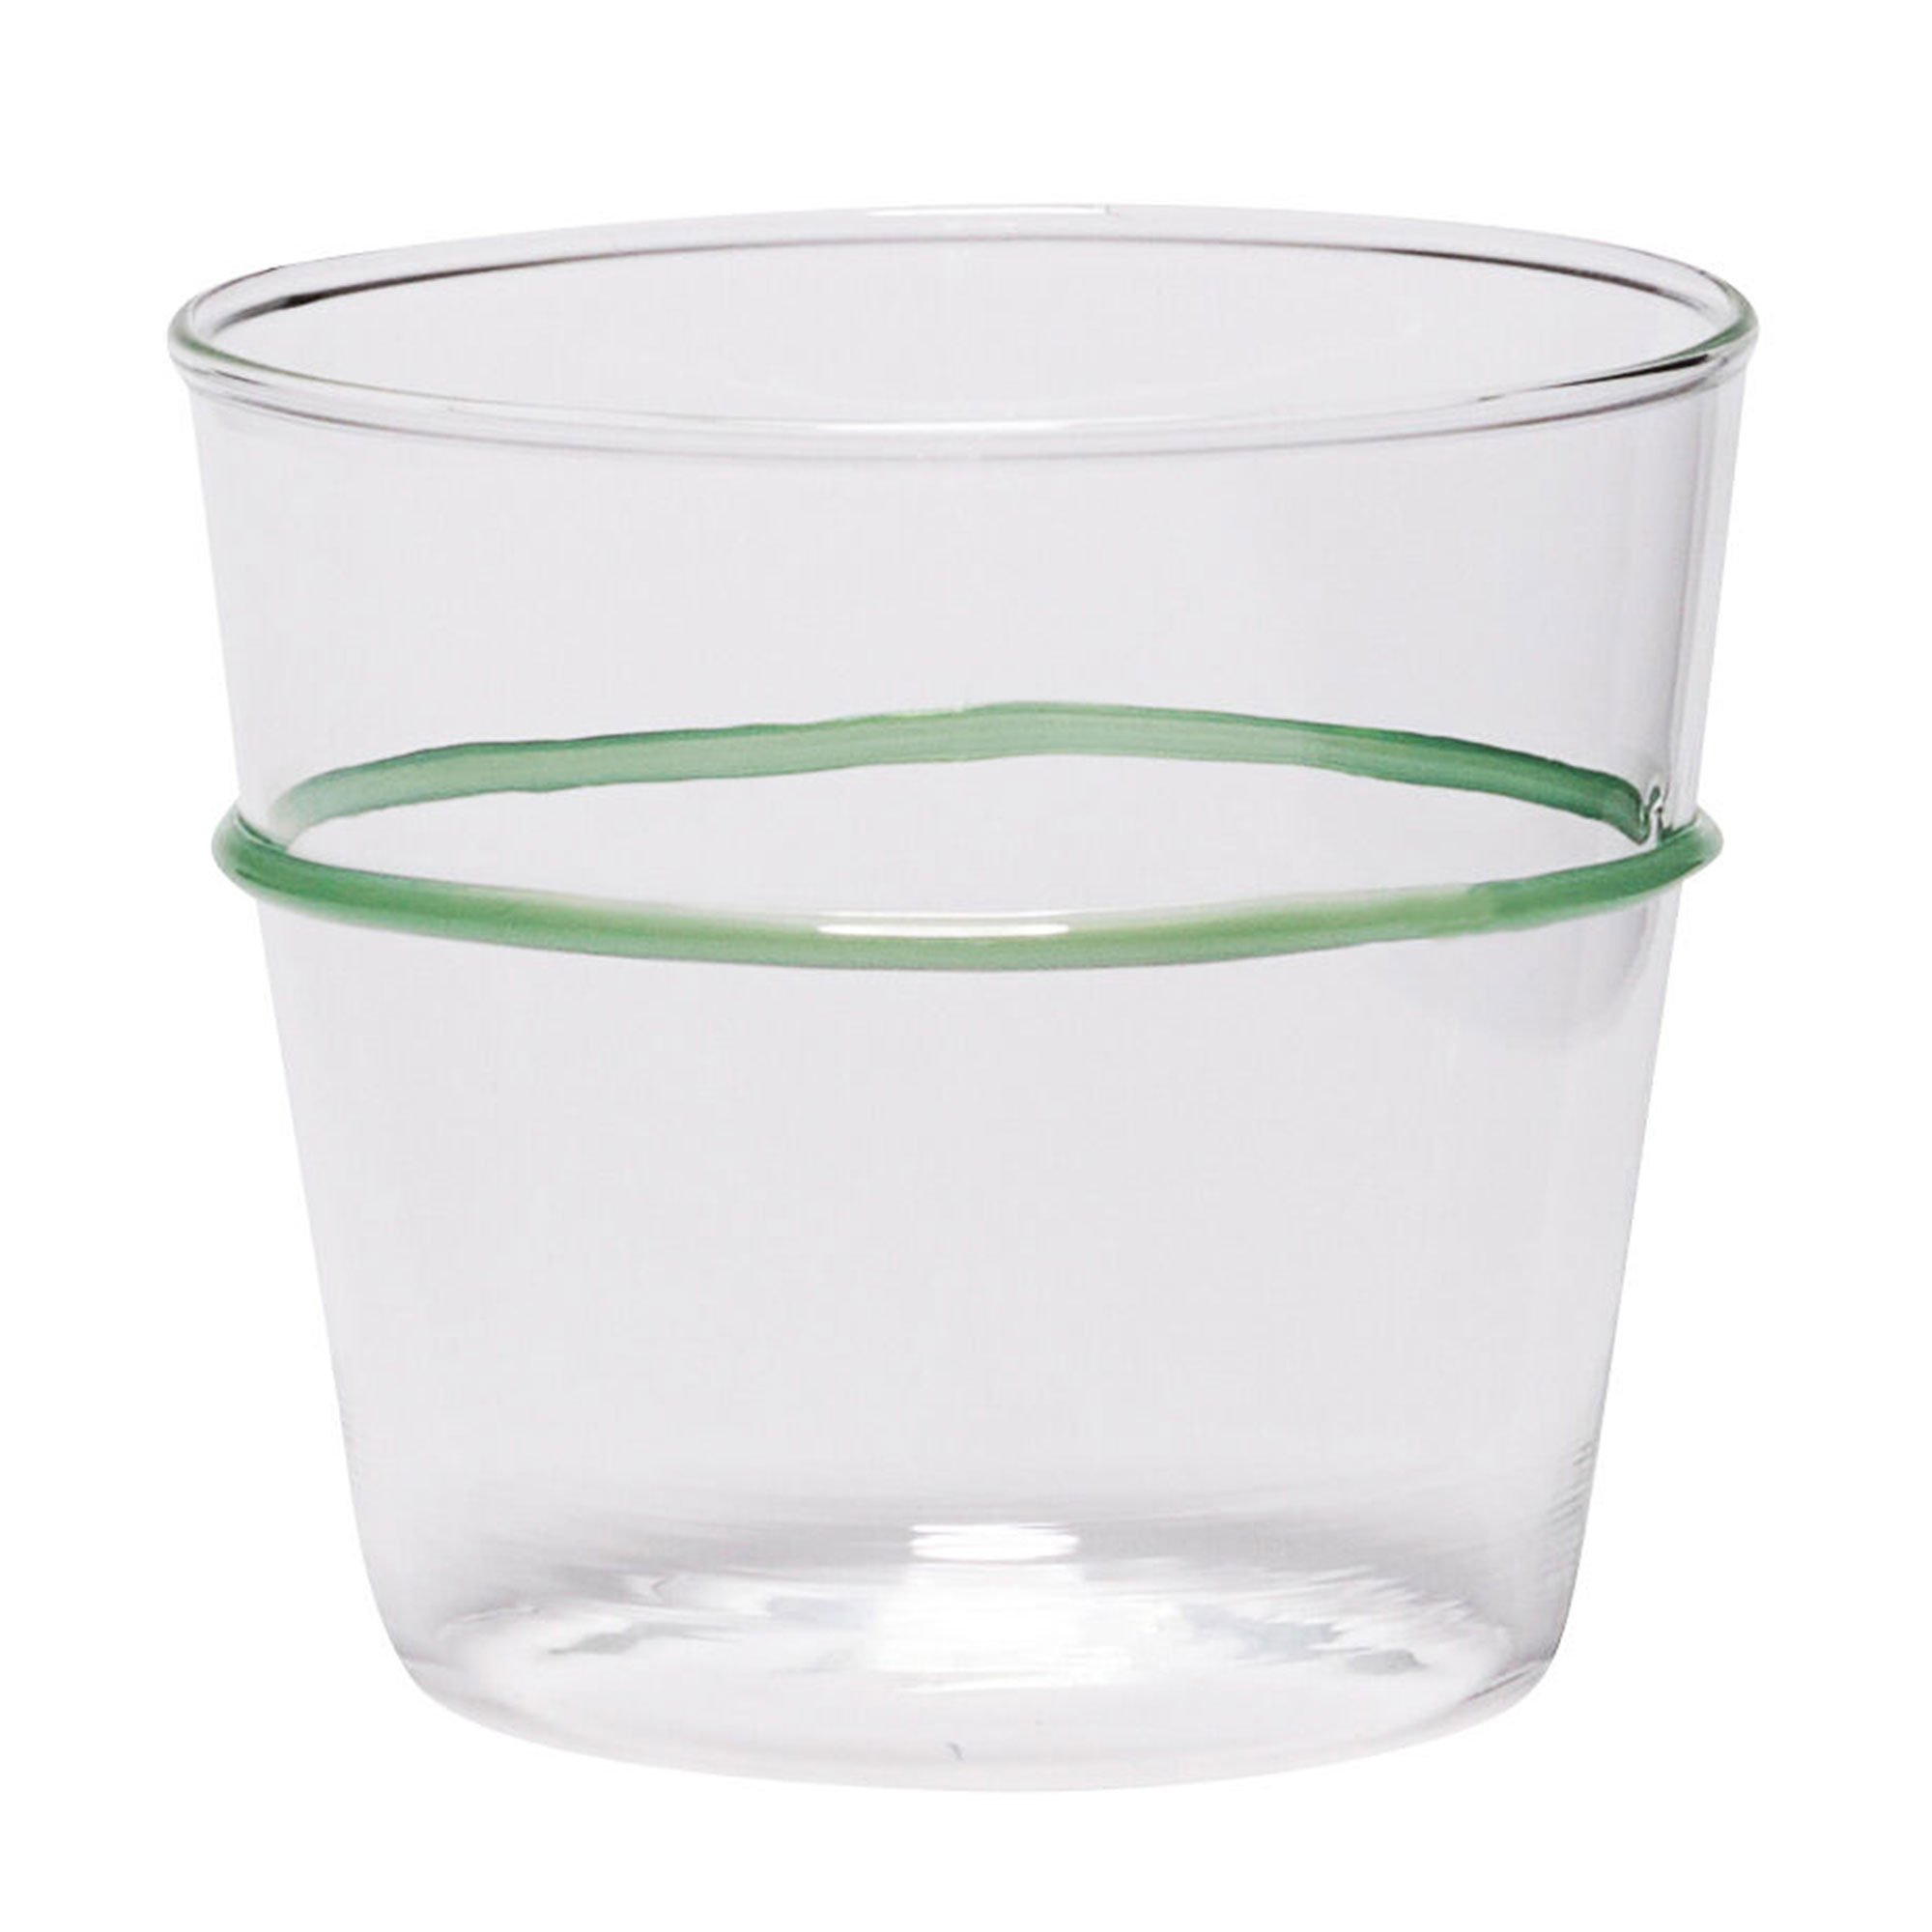 Hübsch Orbit vandglas grøn